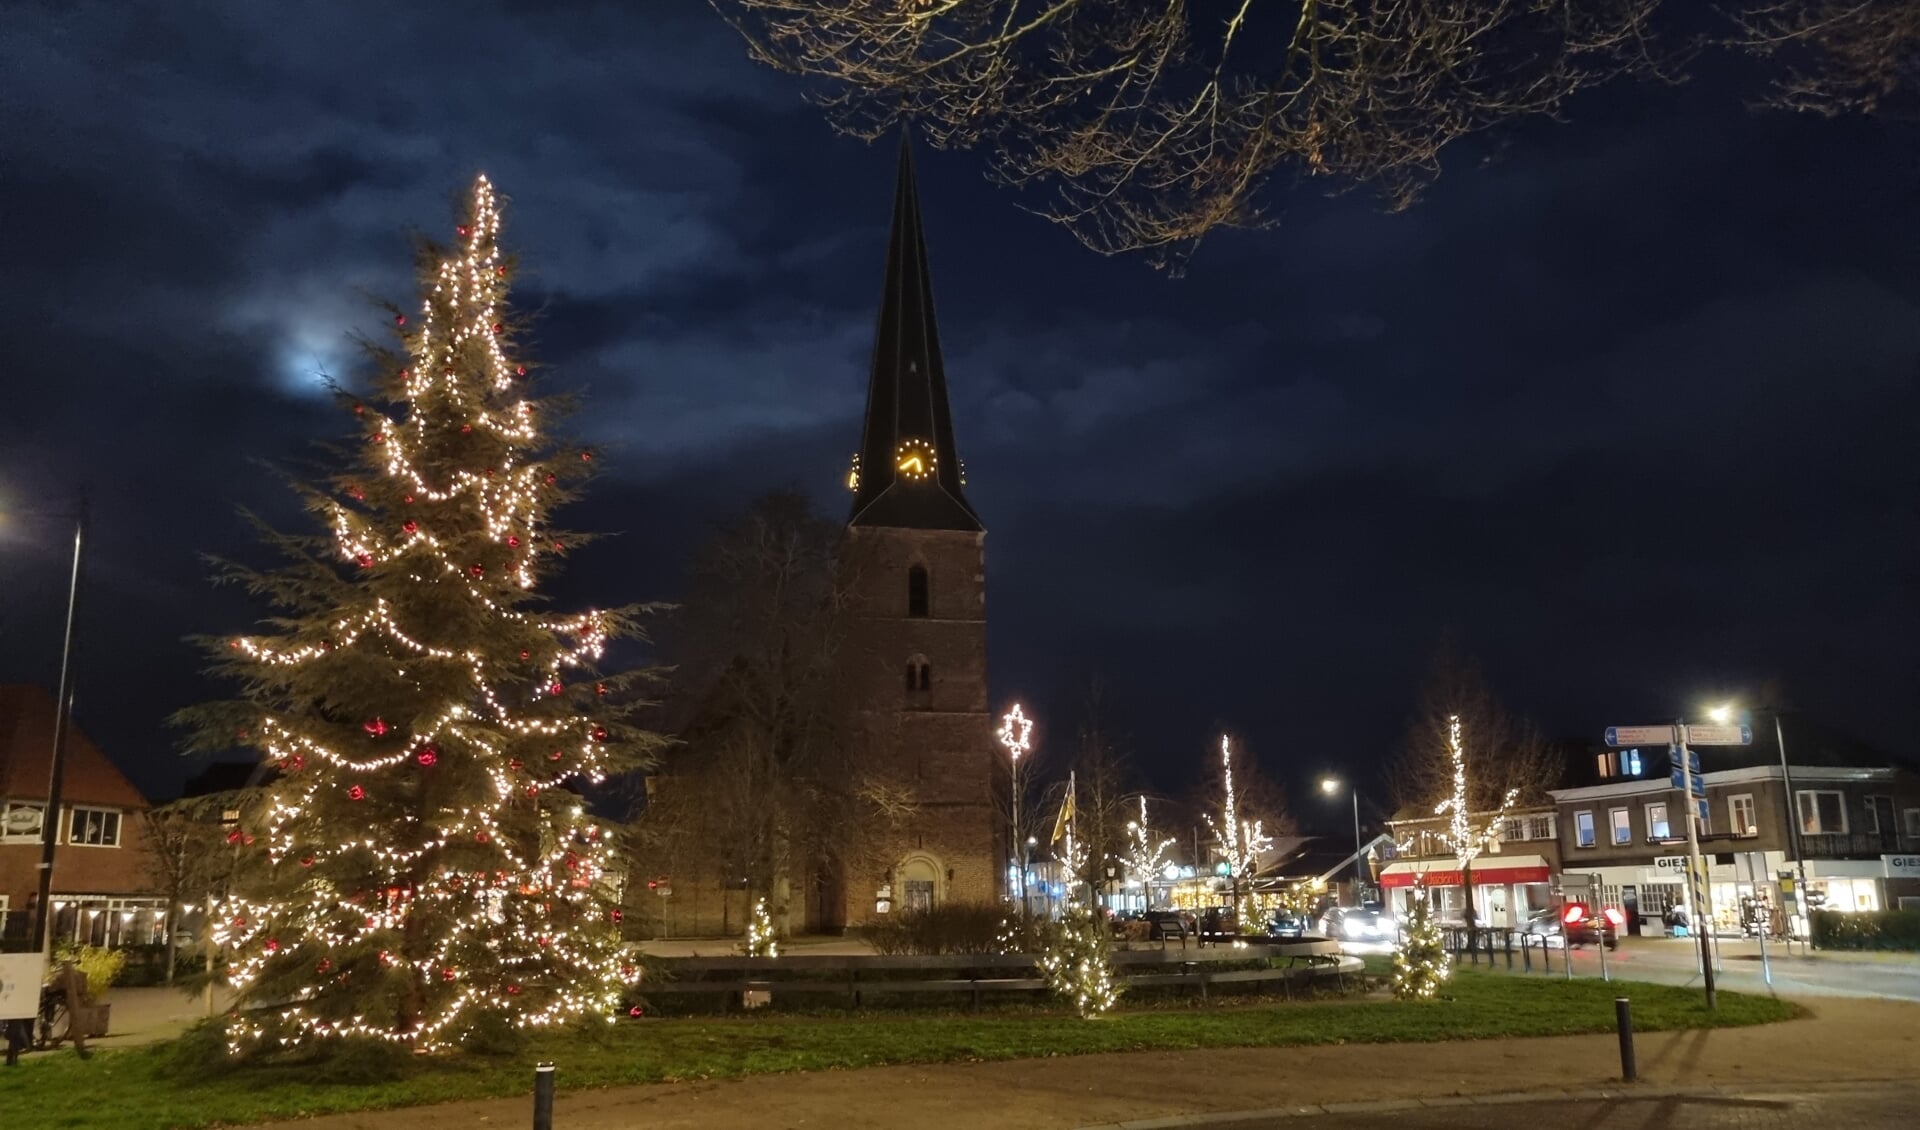 De echte kerstboom met versiering van de heer Polman staat in het centrum van Vorden. Foto: Karin Krijt-Garritsen